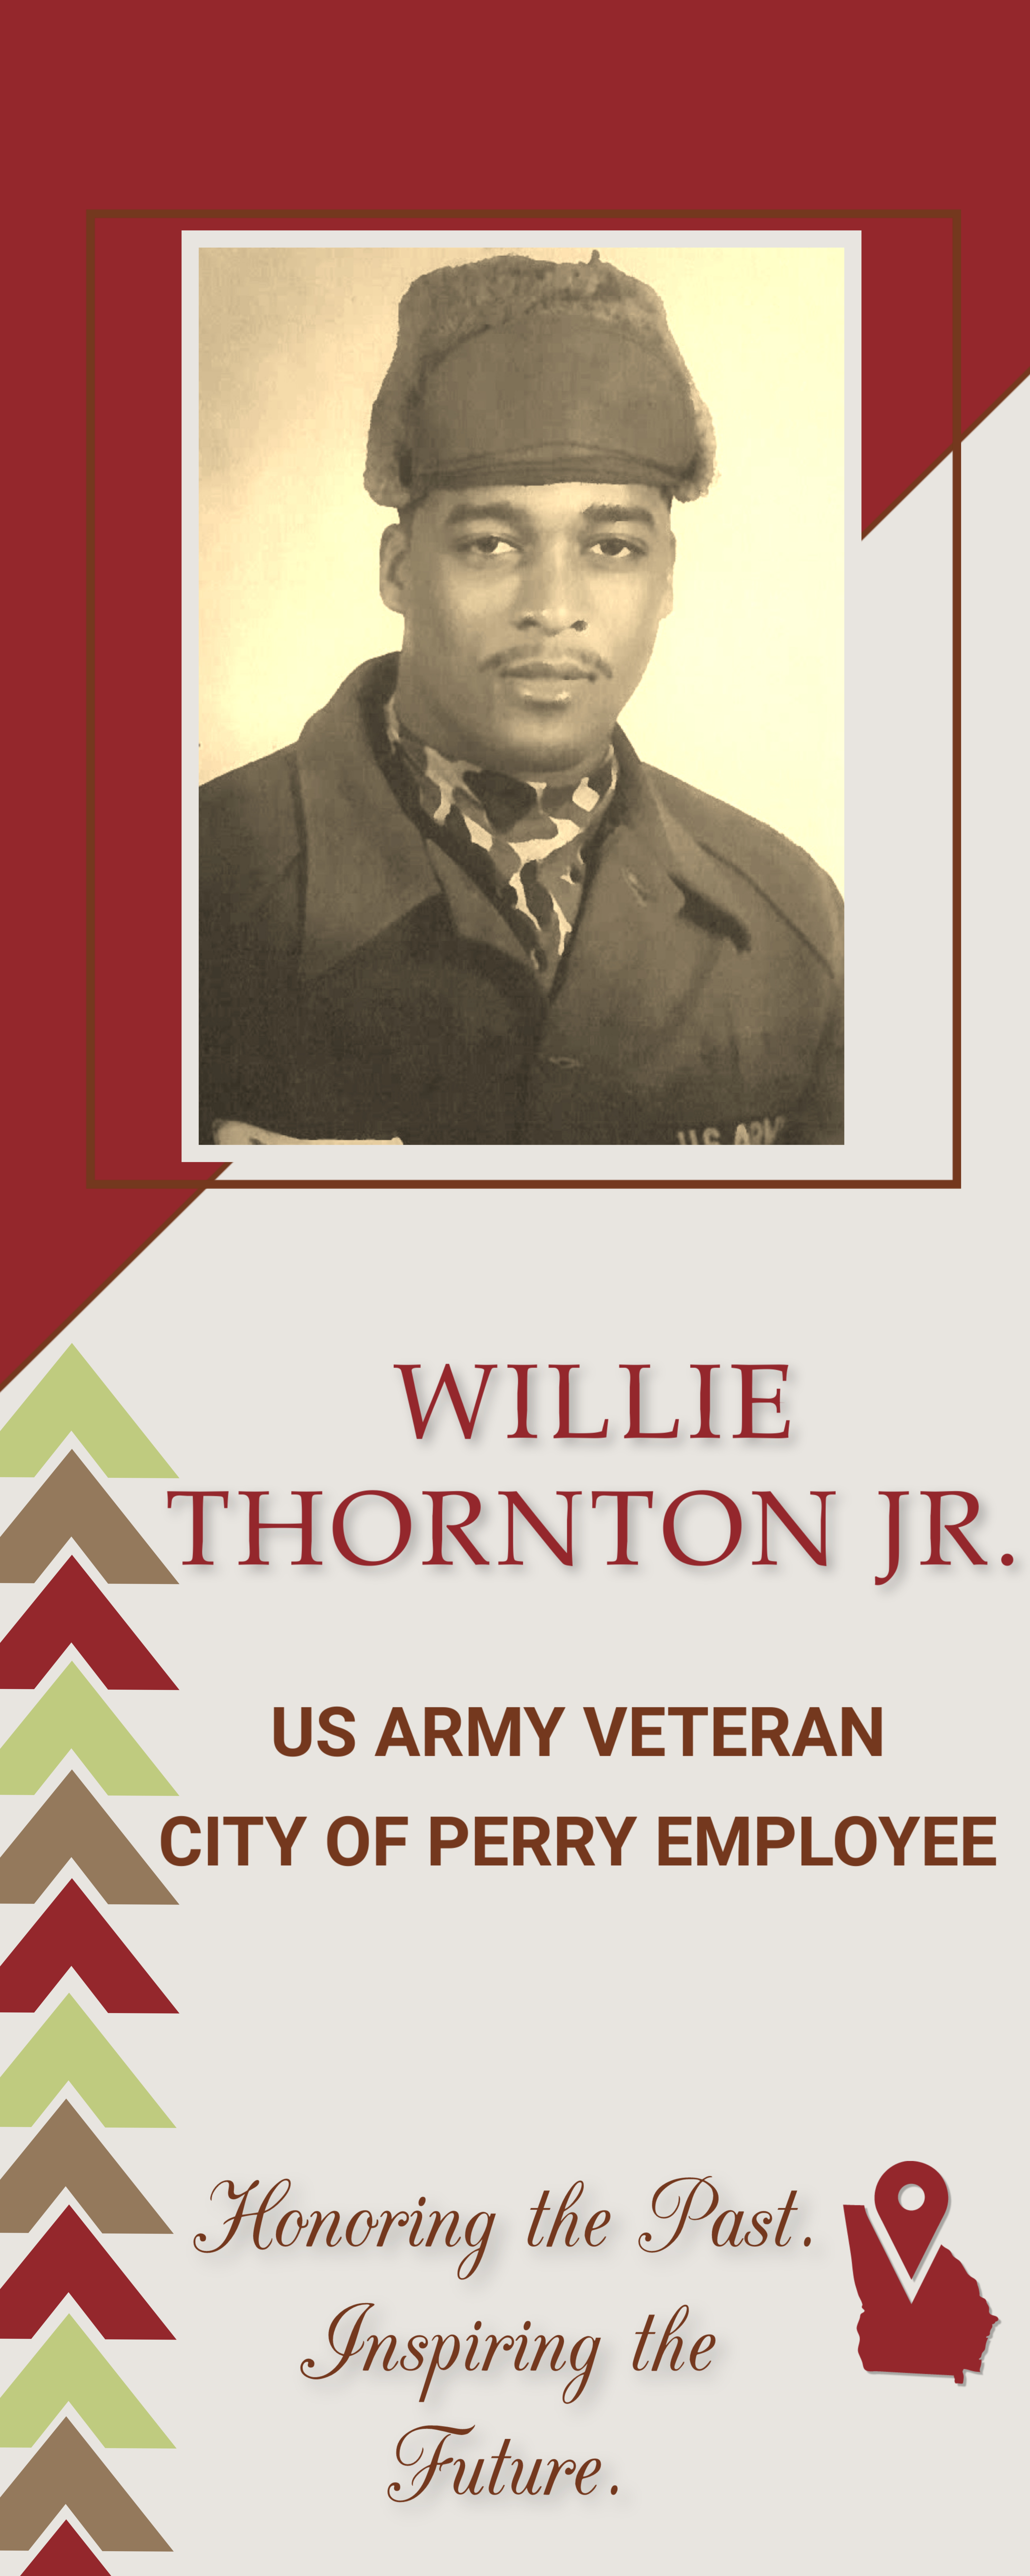 Willie Thornton Jr. 